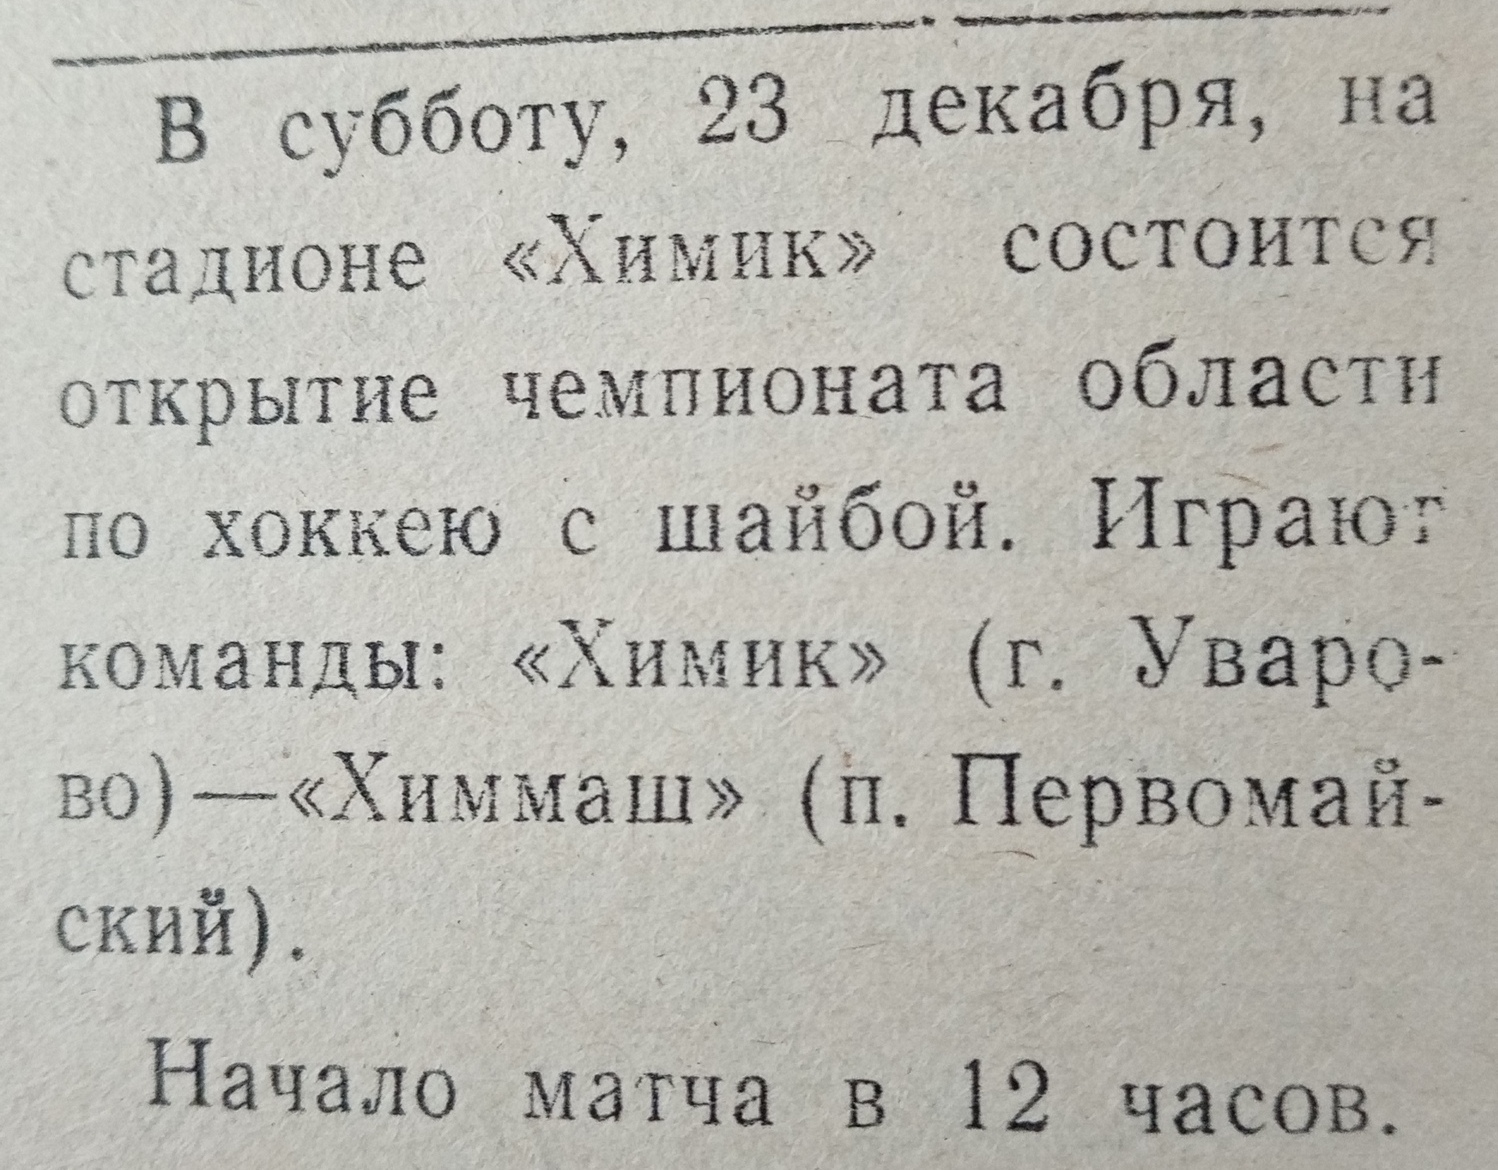 Газета "Заря коммунизма" (Уварово) №7779 от 21.12.1989г.